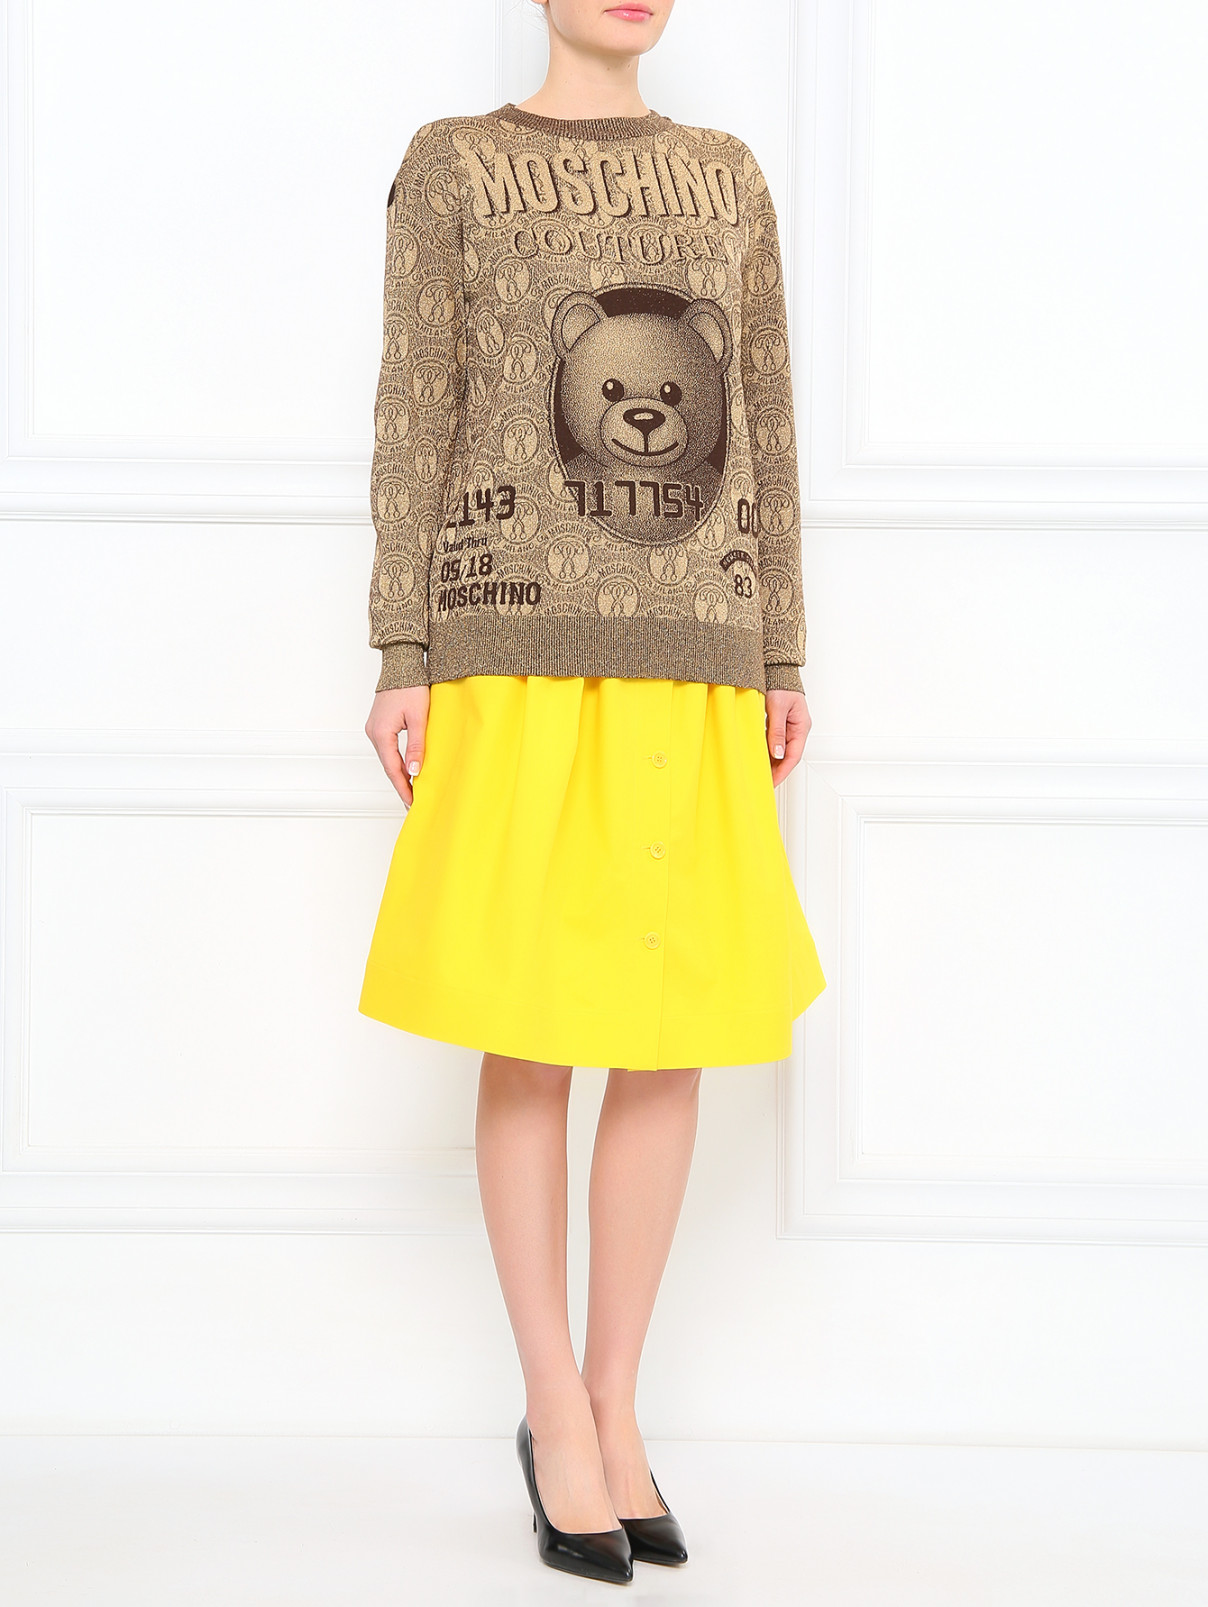 Юбка-трапеция из хлопка с боковыми карманами Moschino Couture  –  Модель Общий вид  – Цвет:  Желтый